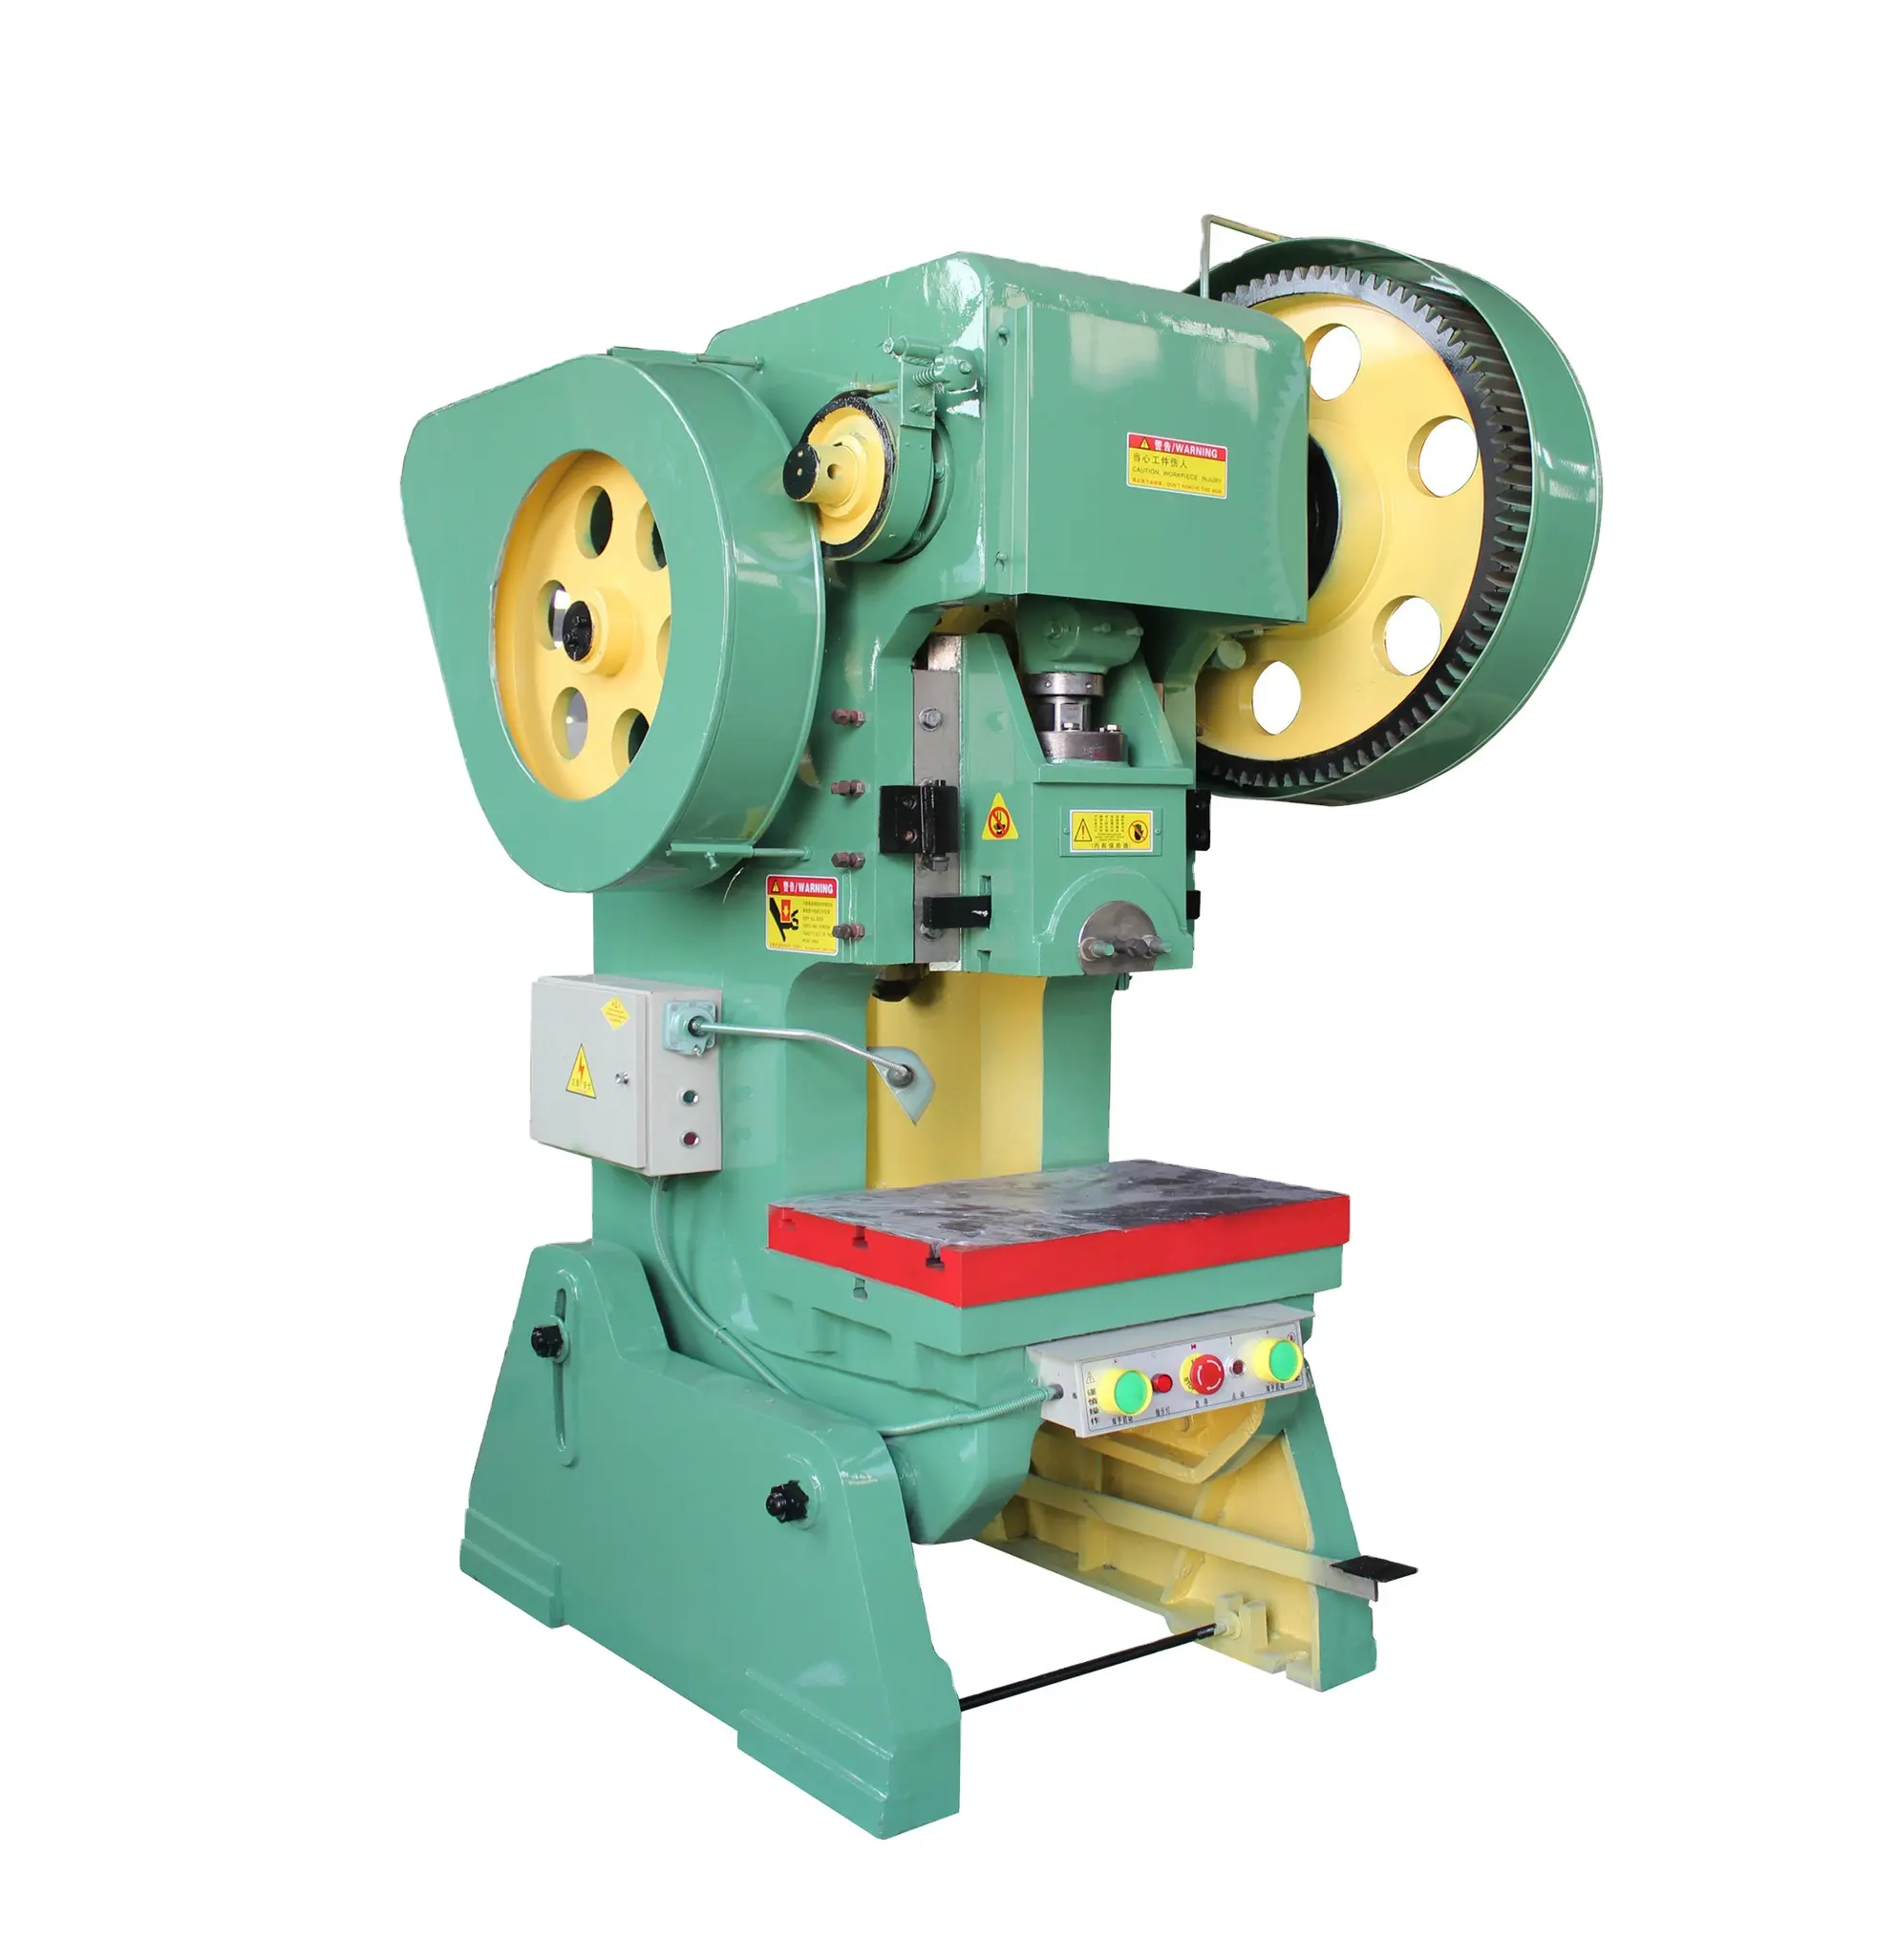 Quick J23-máquina de perforación para corte, máquina de prensado serie c-frame, para flexión